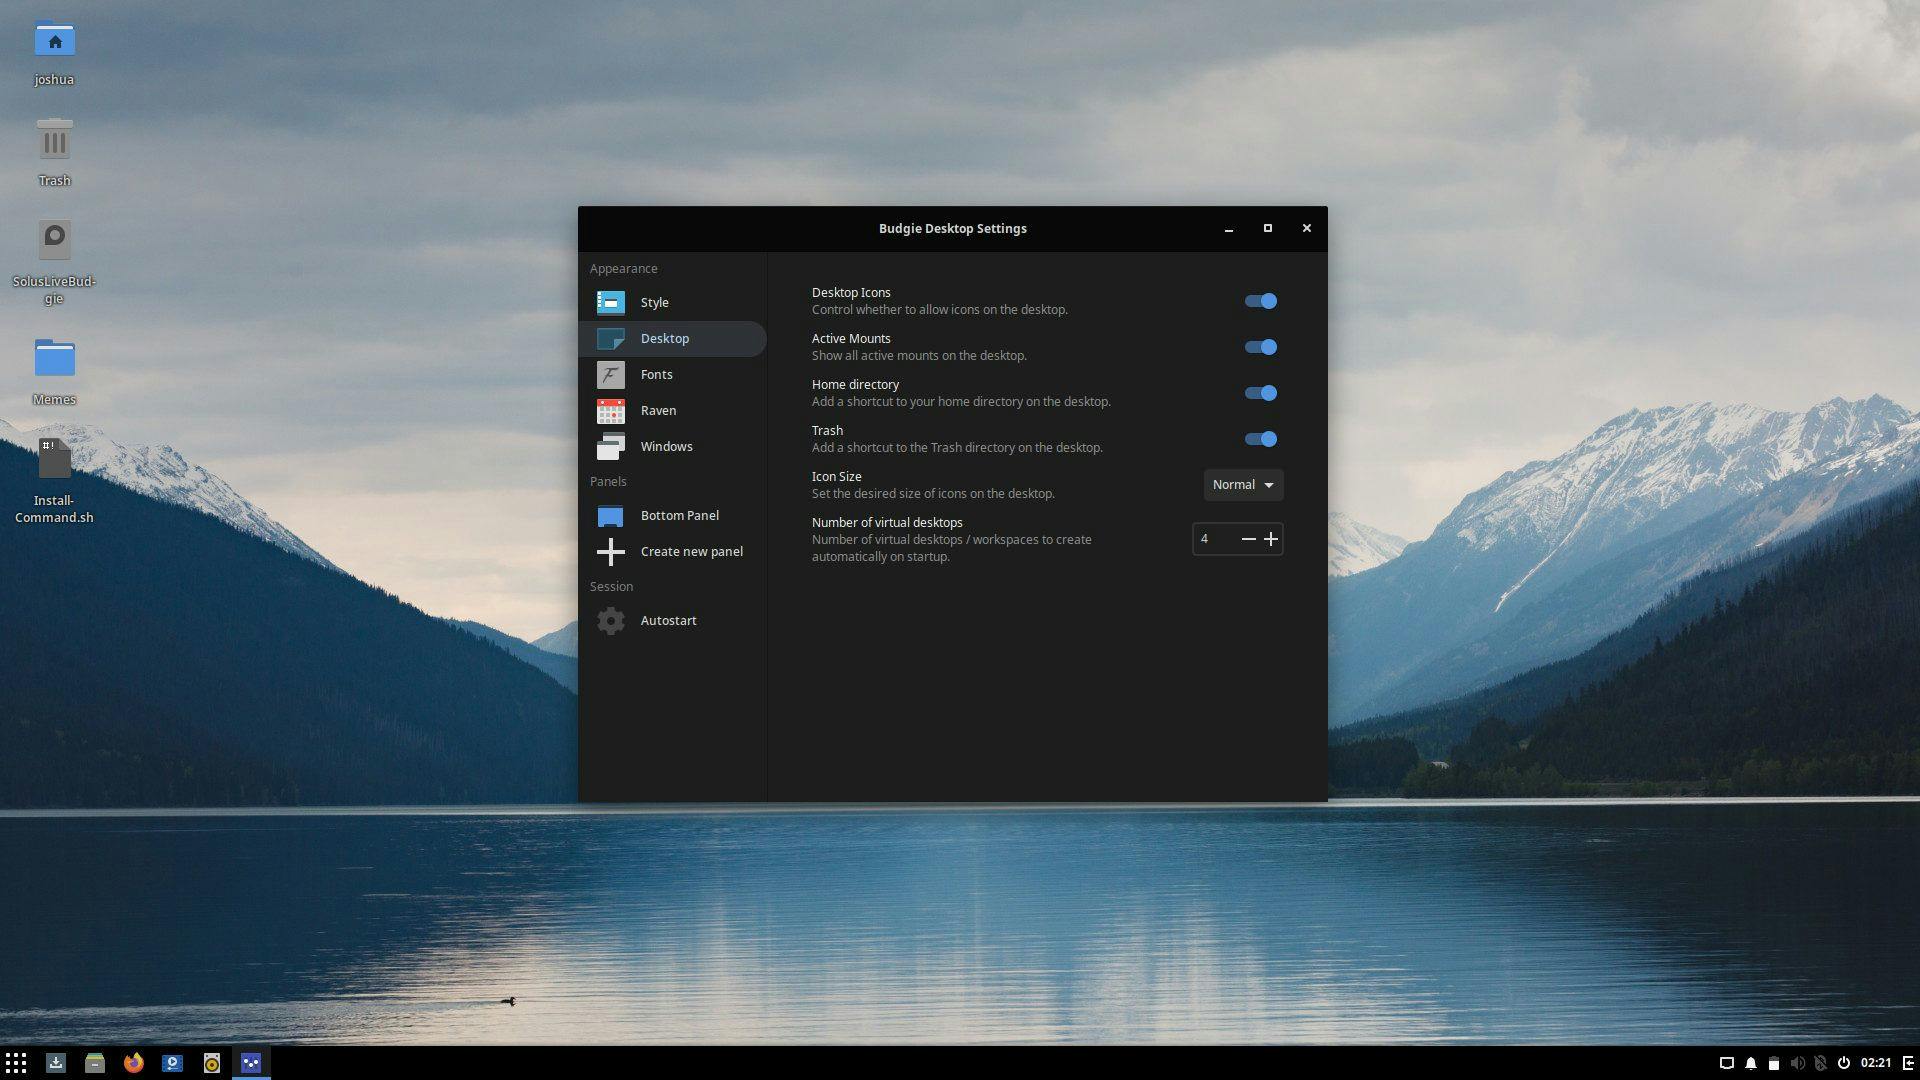 Budgie Desktop View: First Development Release!